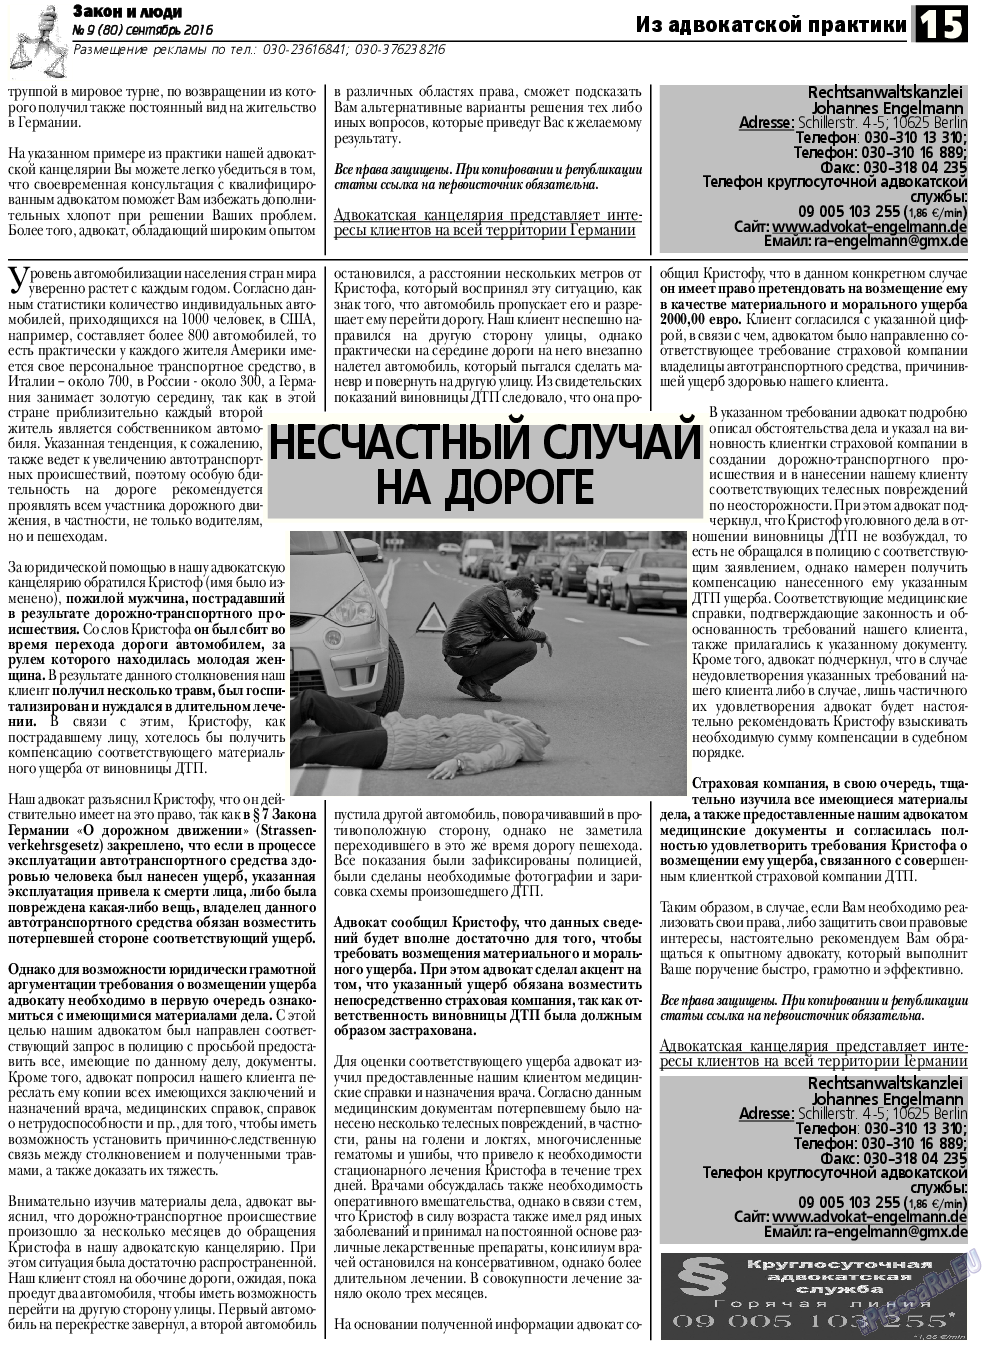 Закон и люди, газета. 2016 №9 стр.15